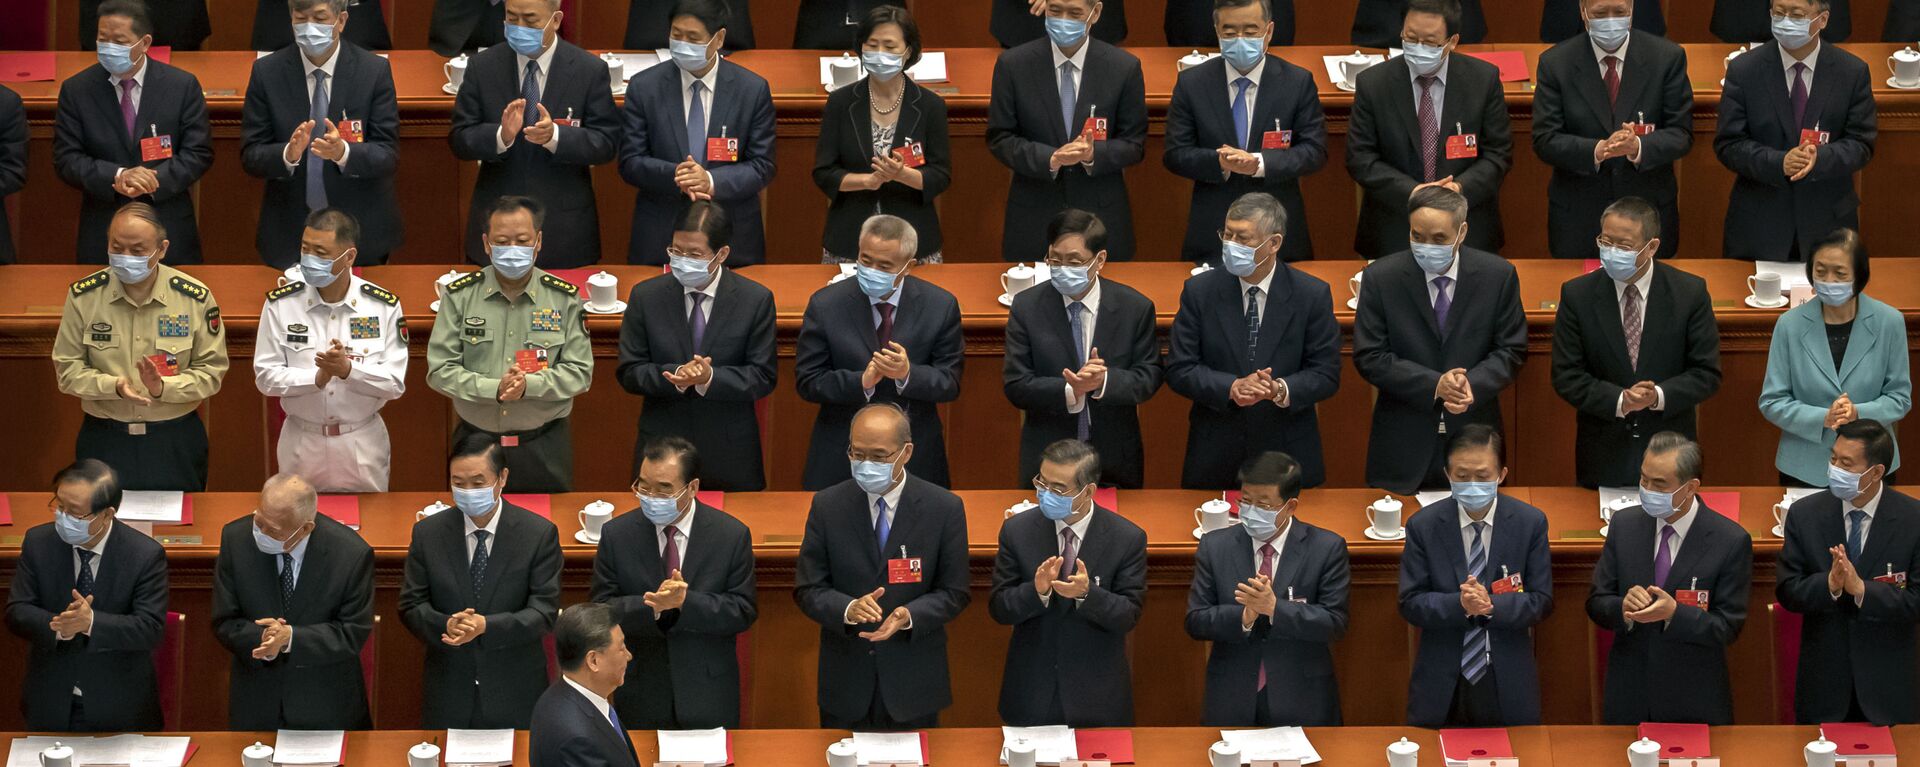 Посланици аплаудирају председнику Кине Си Ђинпингу на почетку седнице парламента у Пекингу - Sputnik Србија, 1920, 05.08.2022